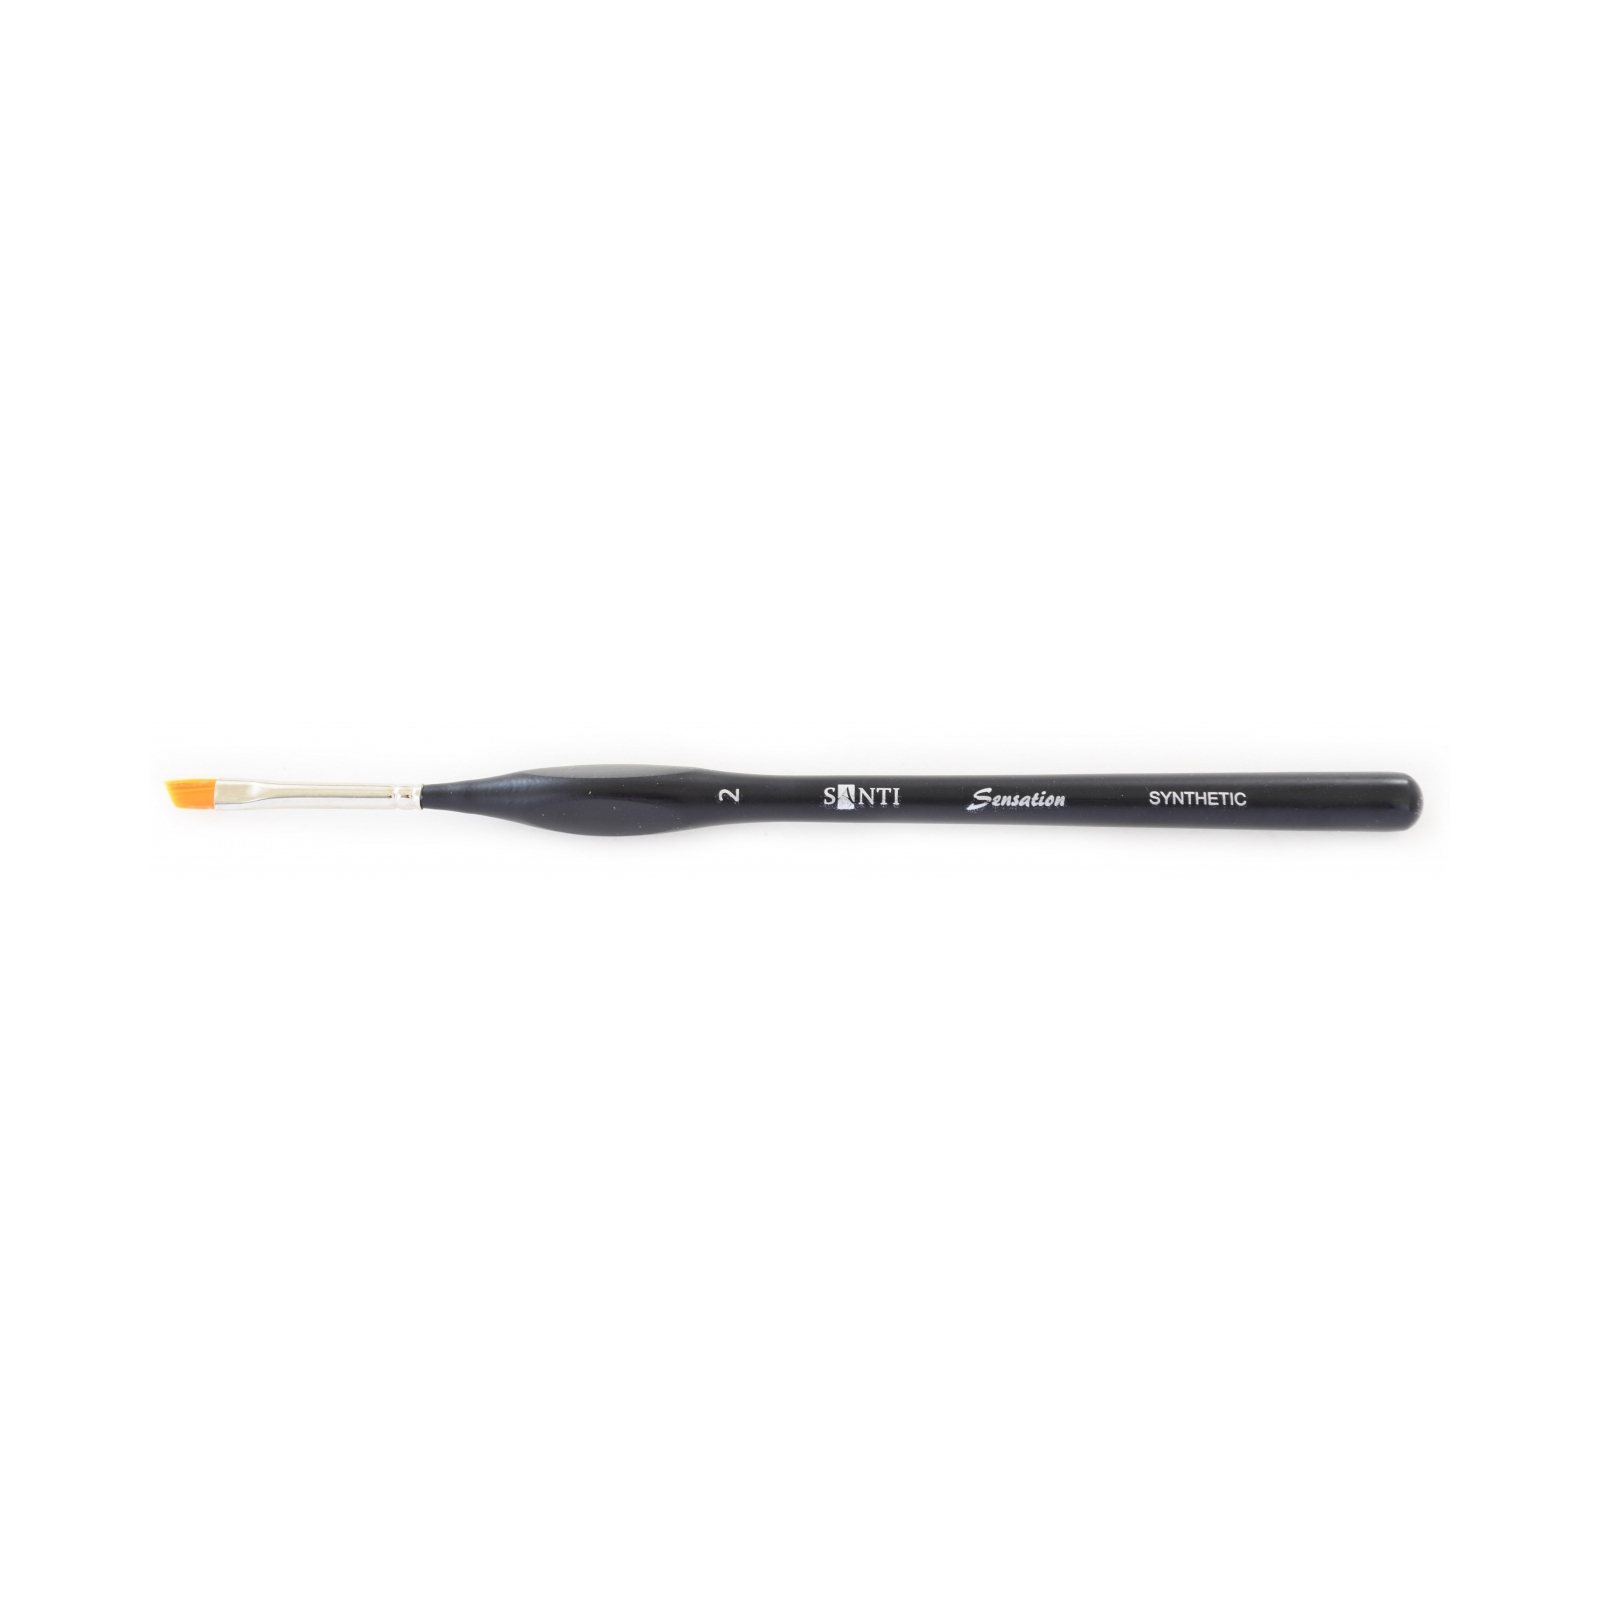 Кисточка для рисования Santi синтетика Sensation, короткая ручка с изгибом, угловая, №2 (310745)